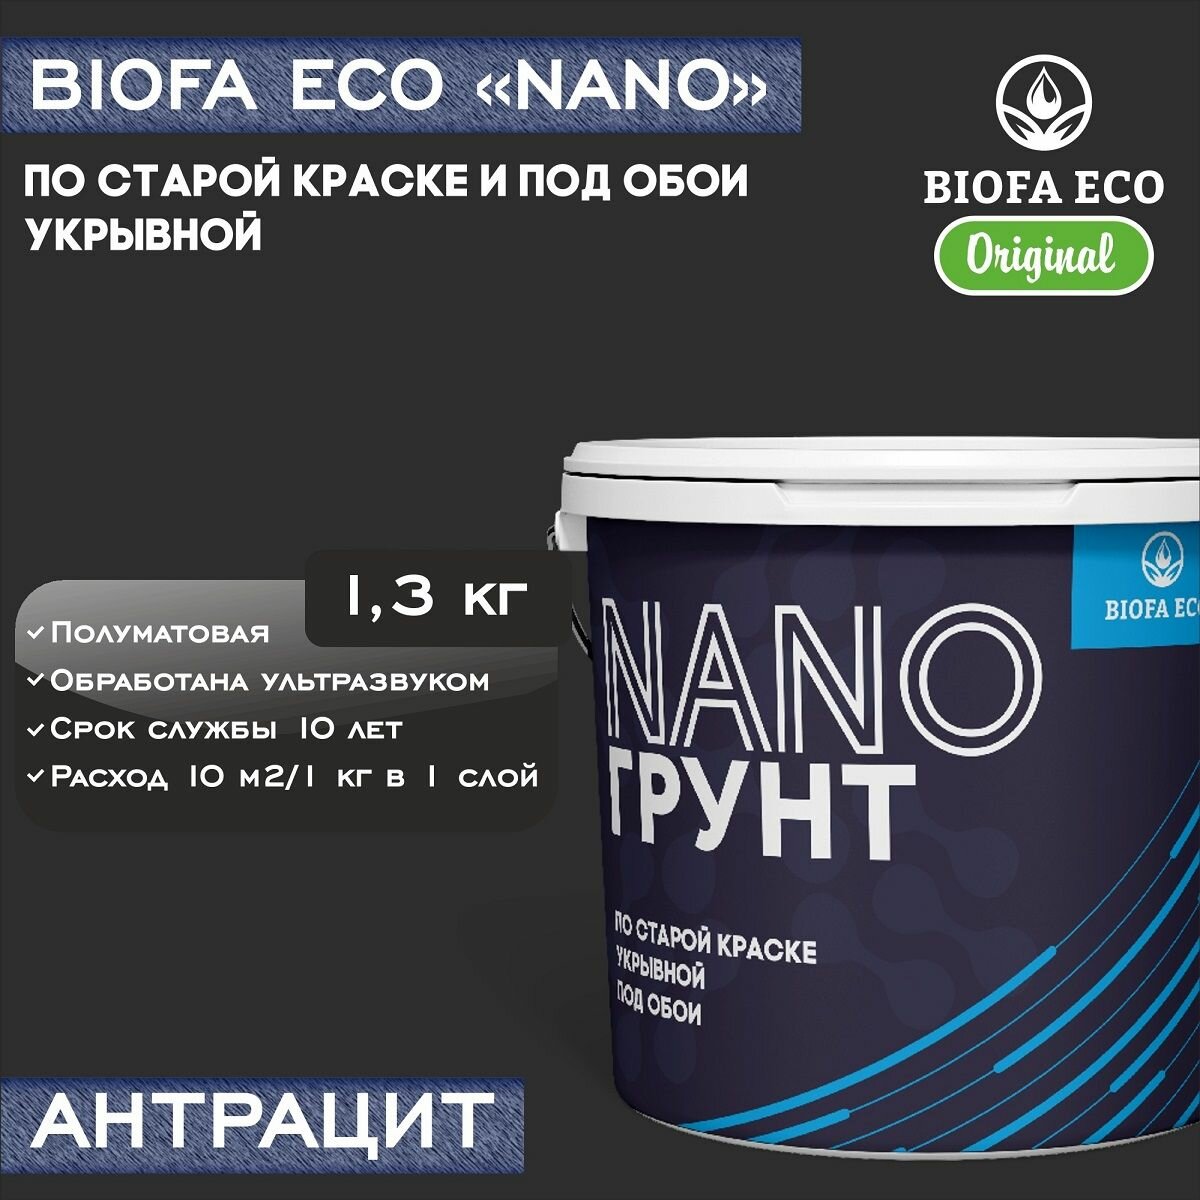 Грунт BIOFA ECO NANO укрывной под обои и по старой краске, адгезионный, цвет антрацит, 1,3 кг